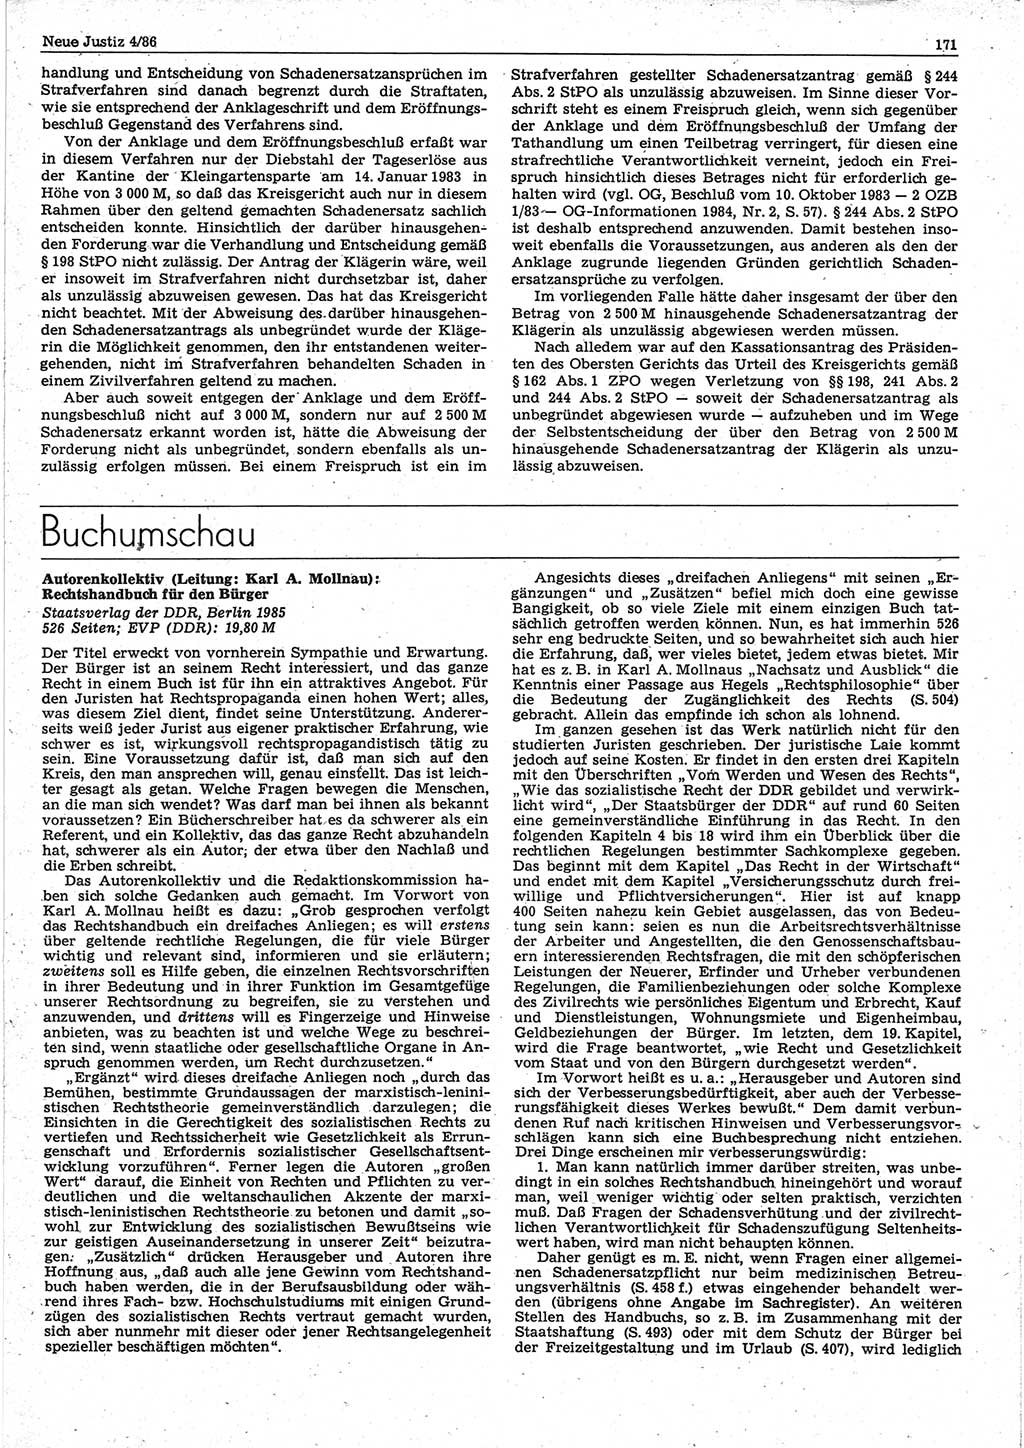 Neue Justiz (NJ), Zeitschrift für sozialistisches Recht und Gesetzlichkeit [Deutsche Demokratische Republik (DDR)], 40. Jahrgang 1986, Seite 171 (NJ DDR 1986, S. 171)